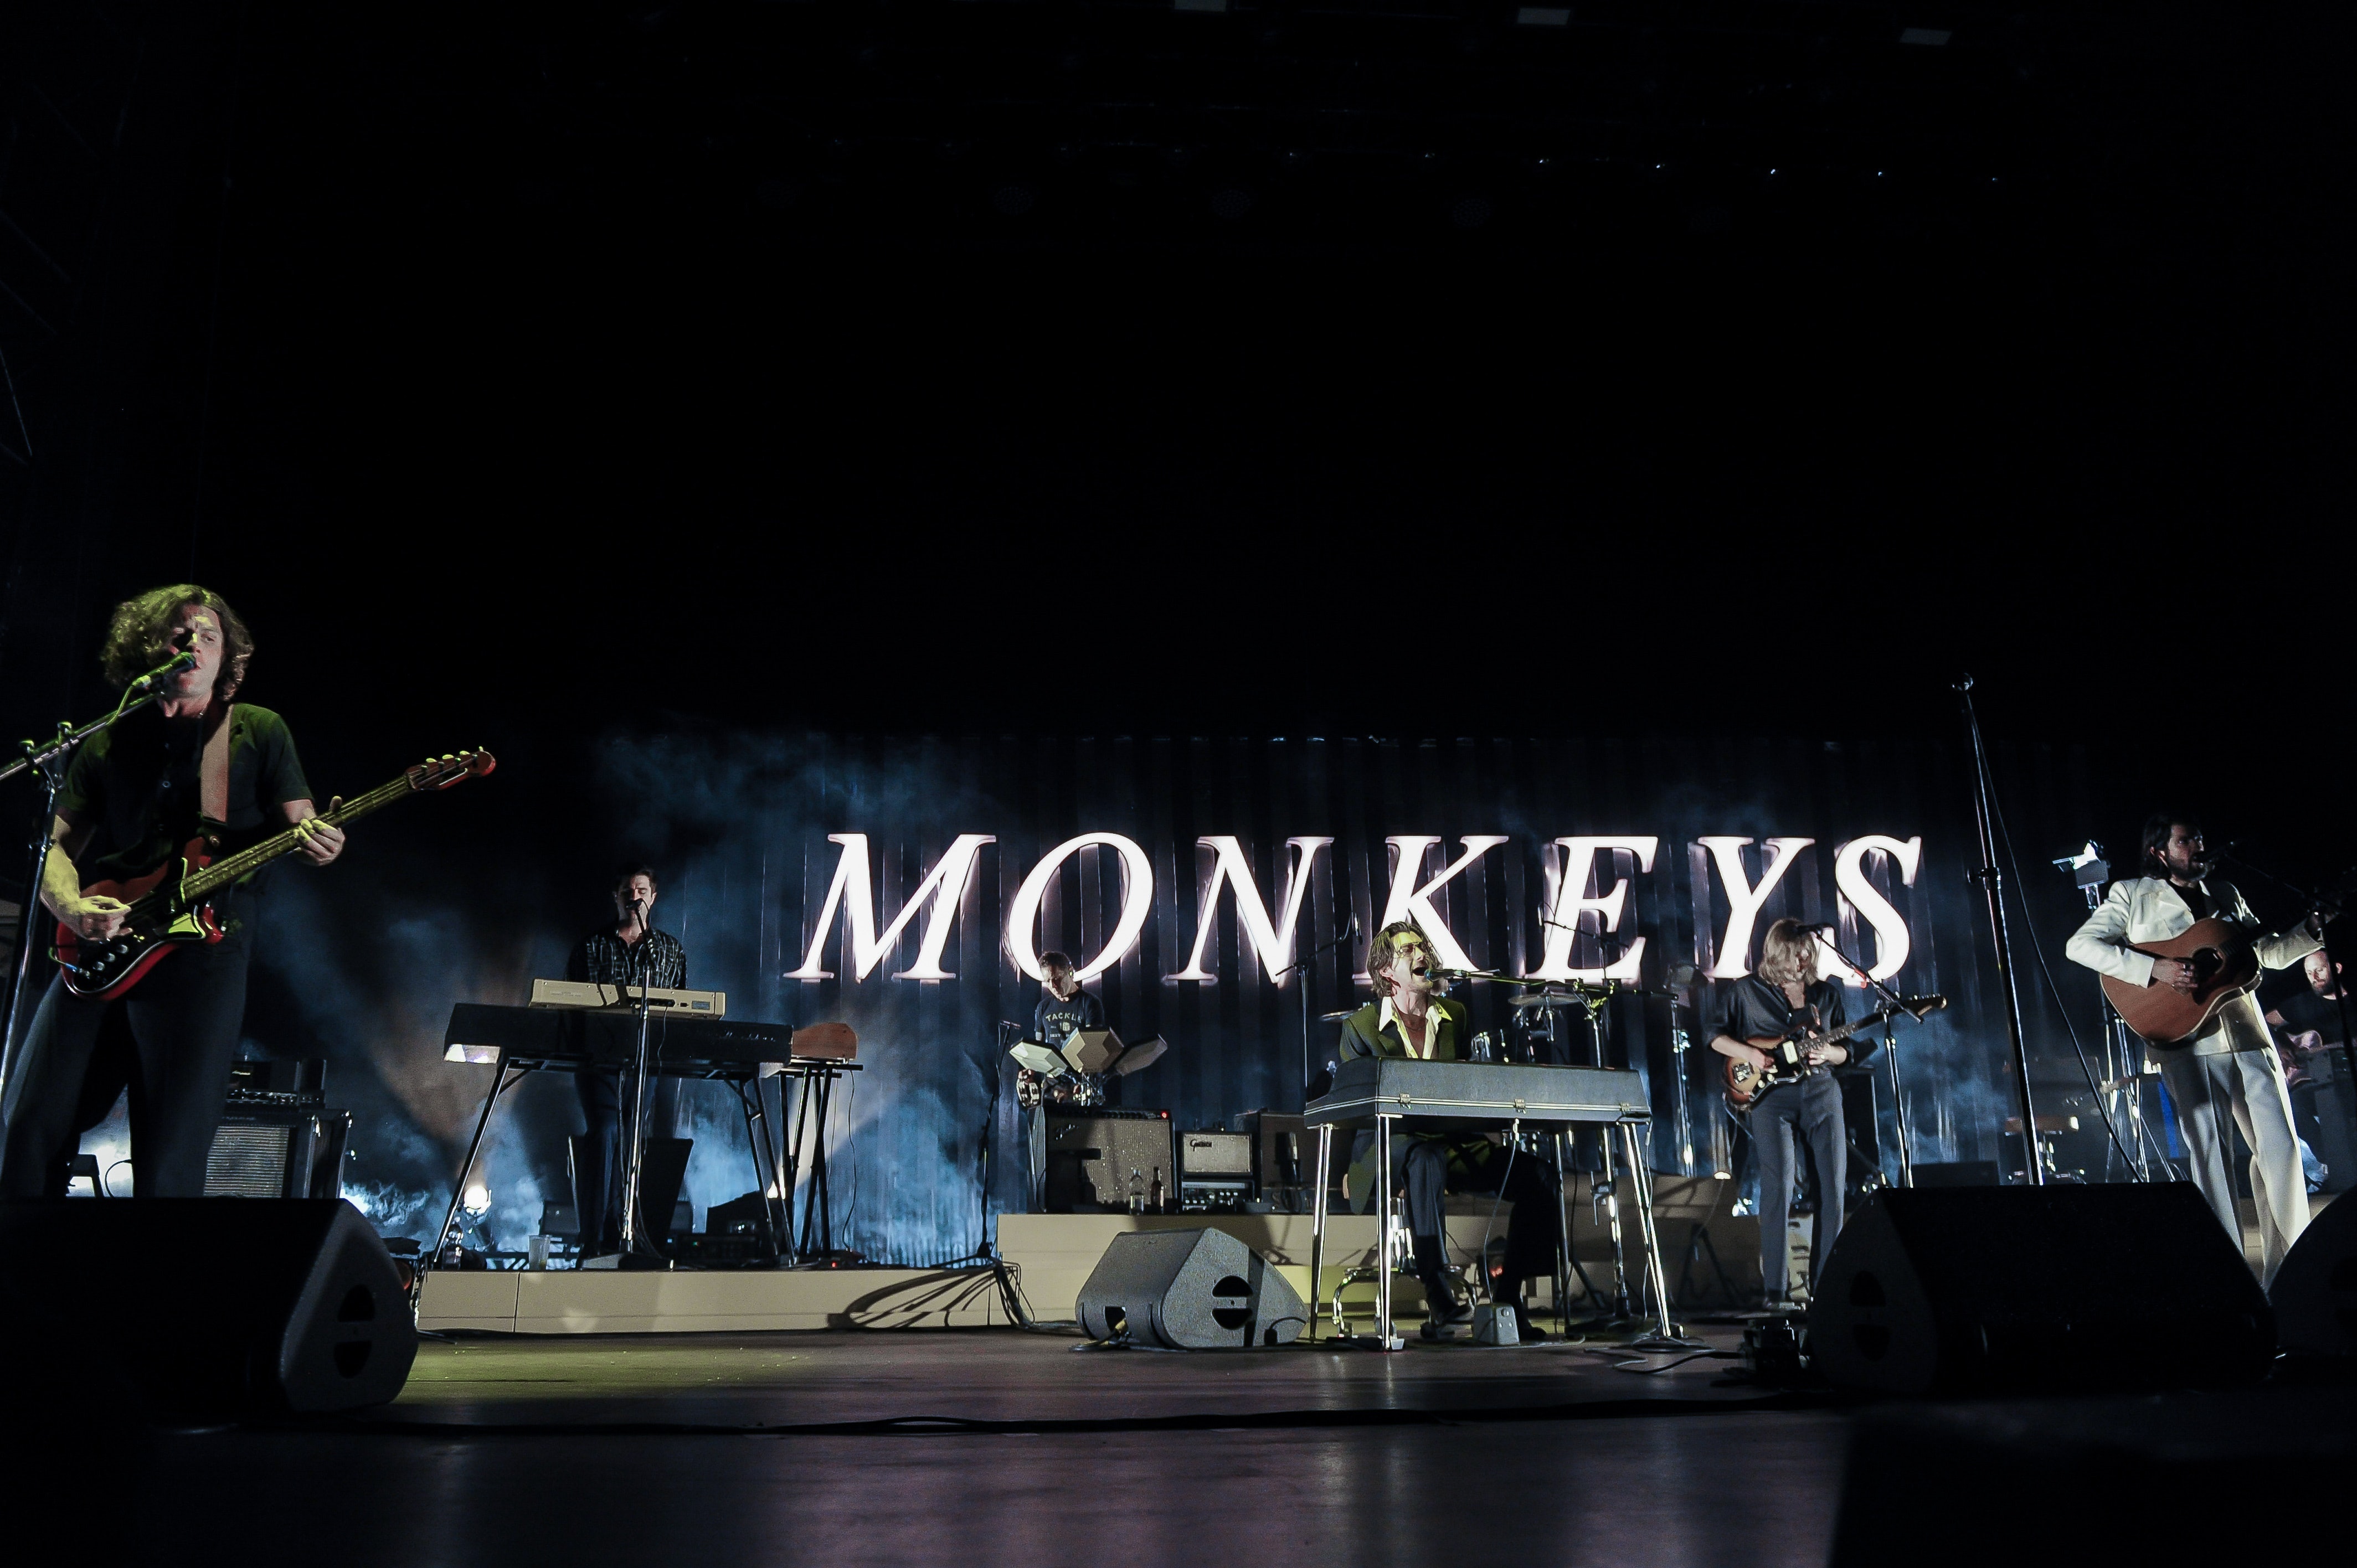 Arctic Monkeys wreszcie ogłosiły 2 występy w Wielkiej Brytanii w 2022 roku